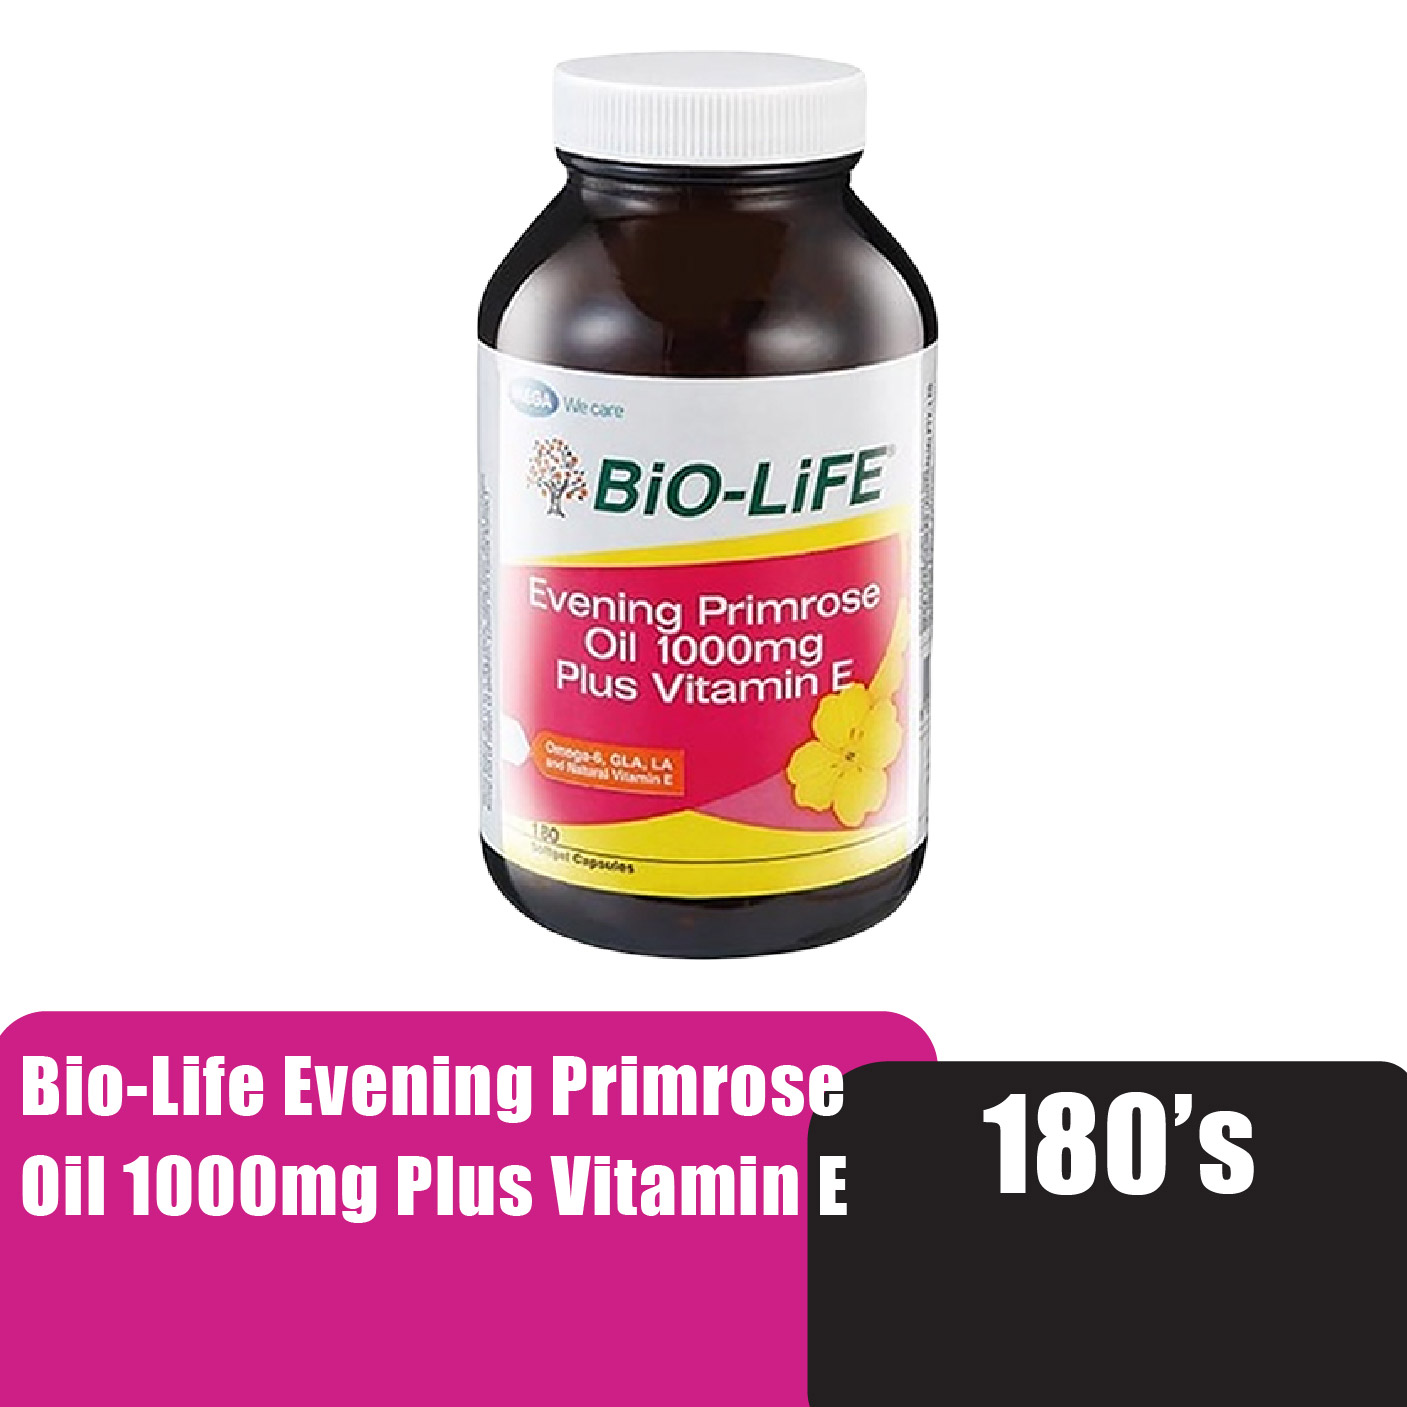 [EPO] Bio-Life Evening Primrose Oil 1000mg Plus Vitamin E 180's